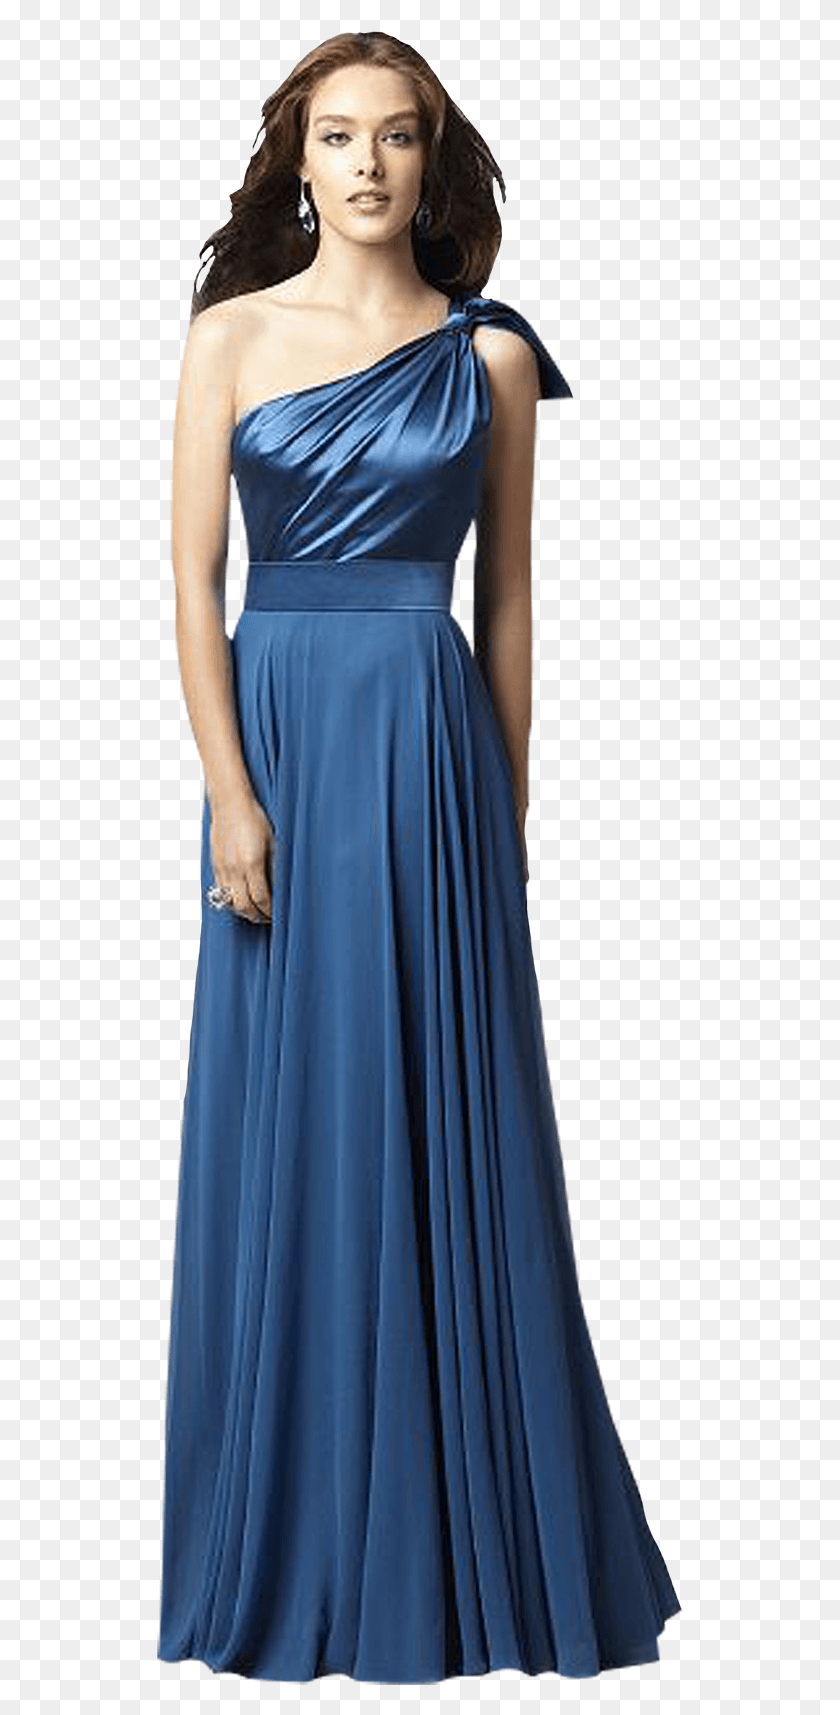 527x1655 La Gente Elegante Mujer En Vestido Azul, Ropa, Vestido De Noche, Bata Hd Png